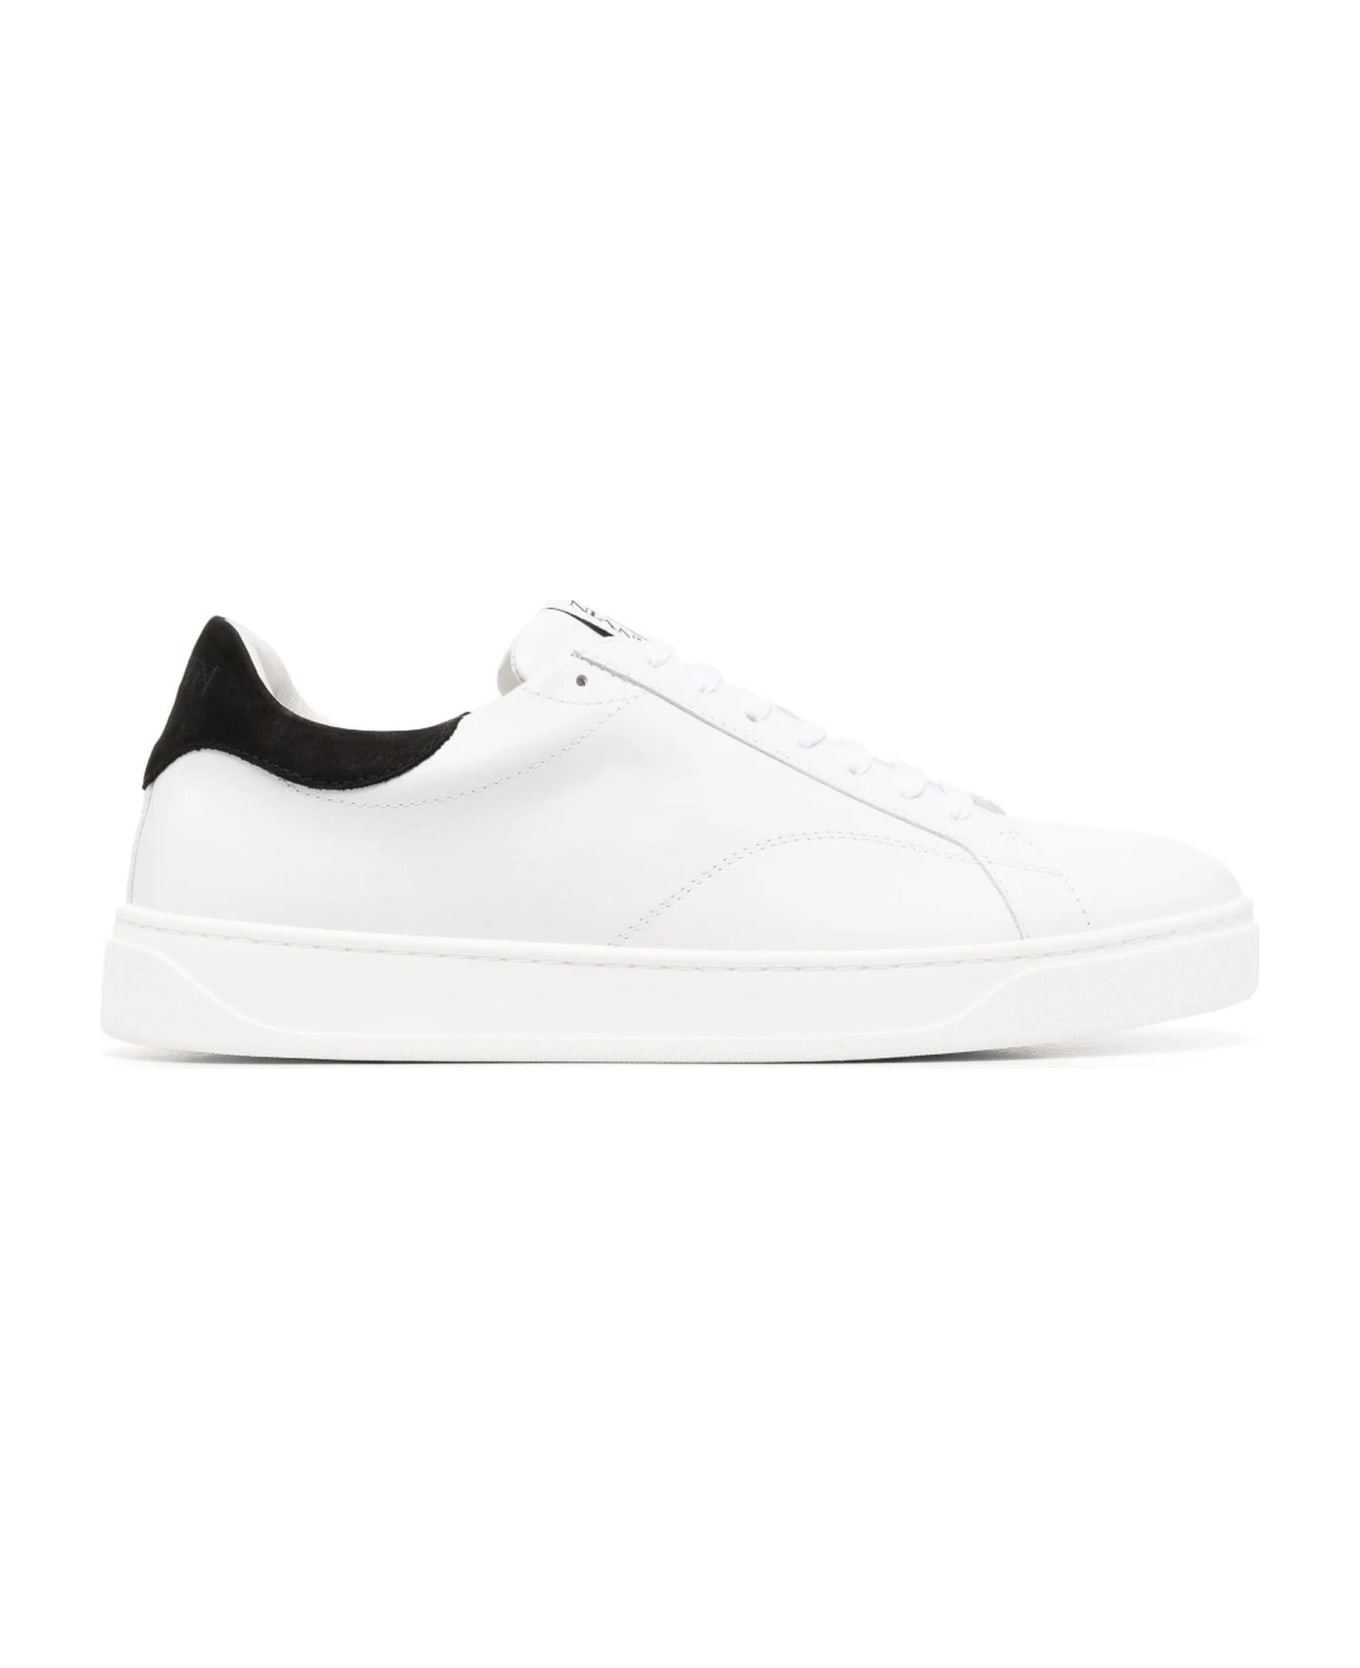 Lanvin Sneakers White - White スニーカー